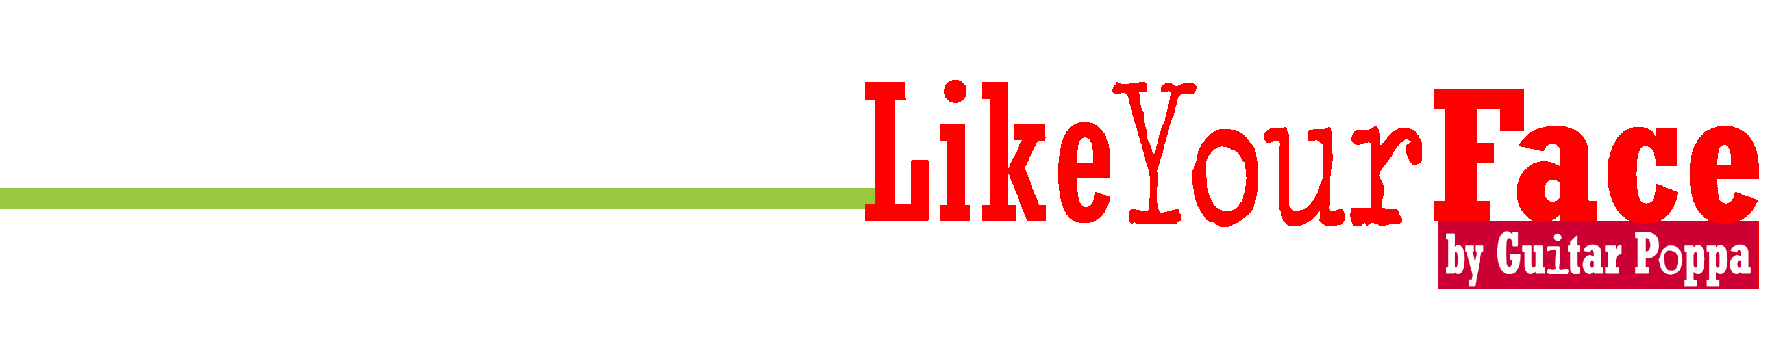 LikeYourFace - logo produit L15x300dpi